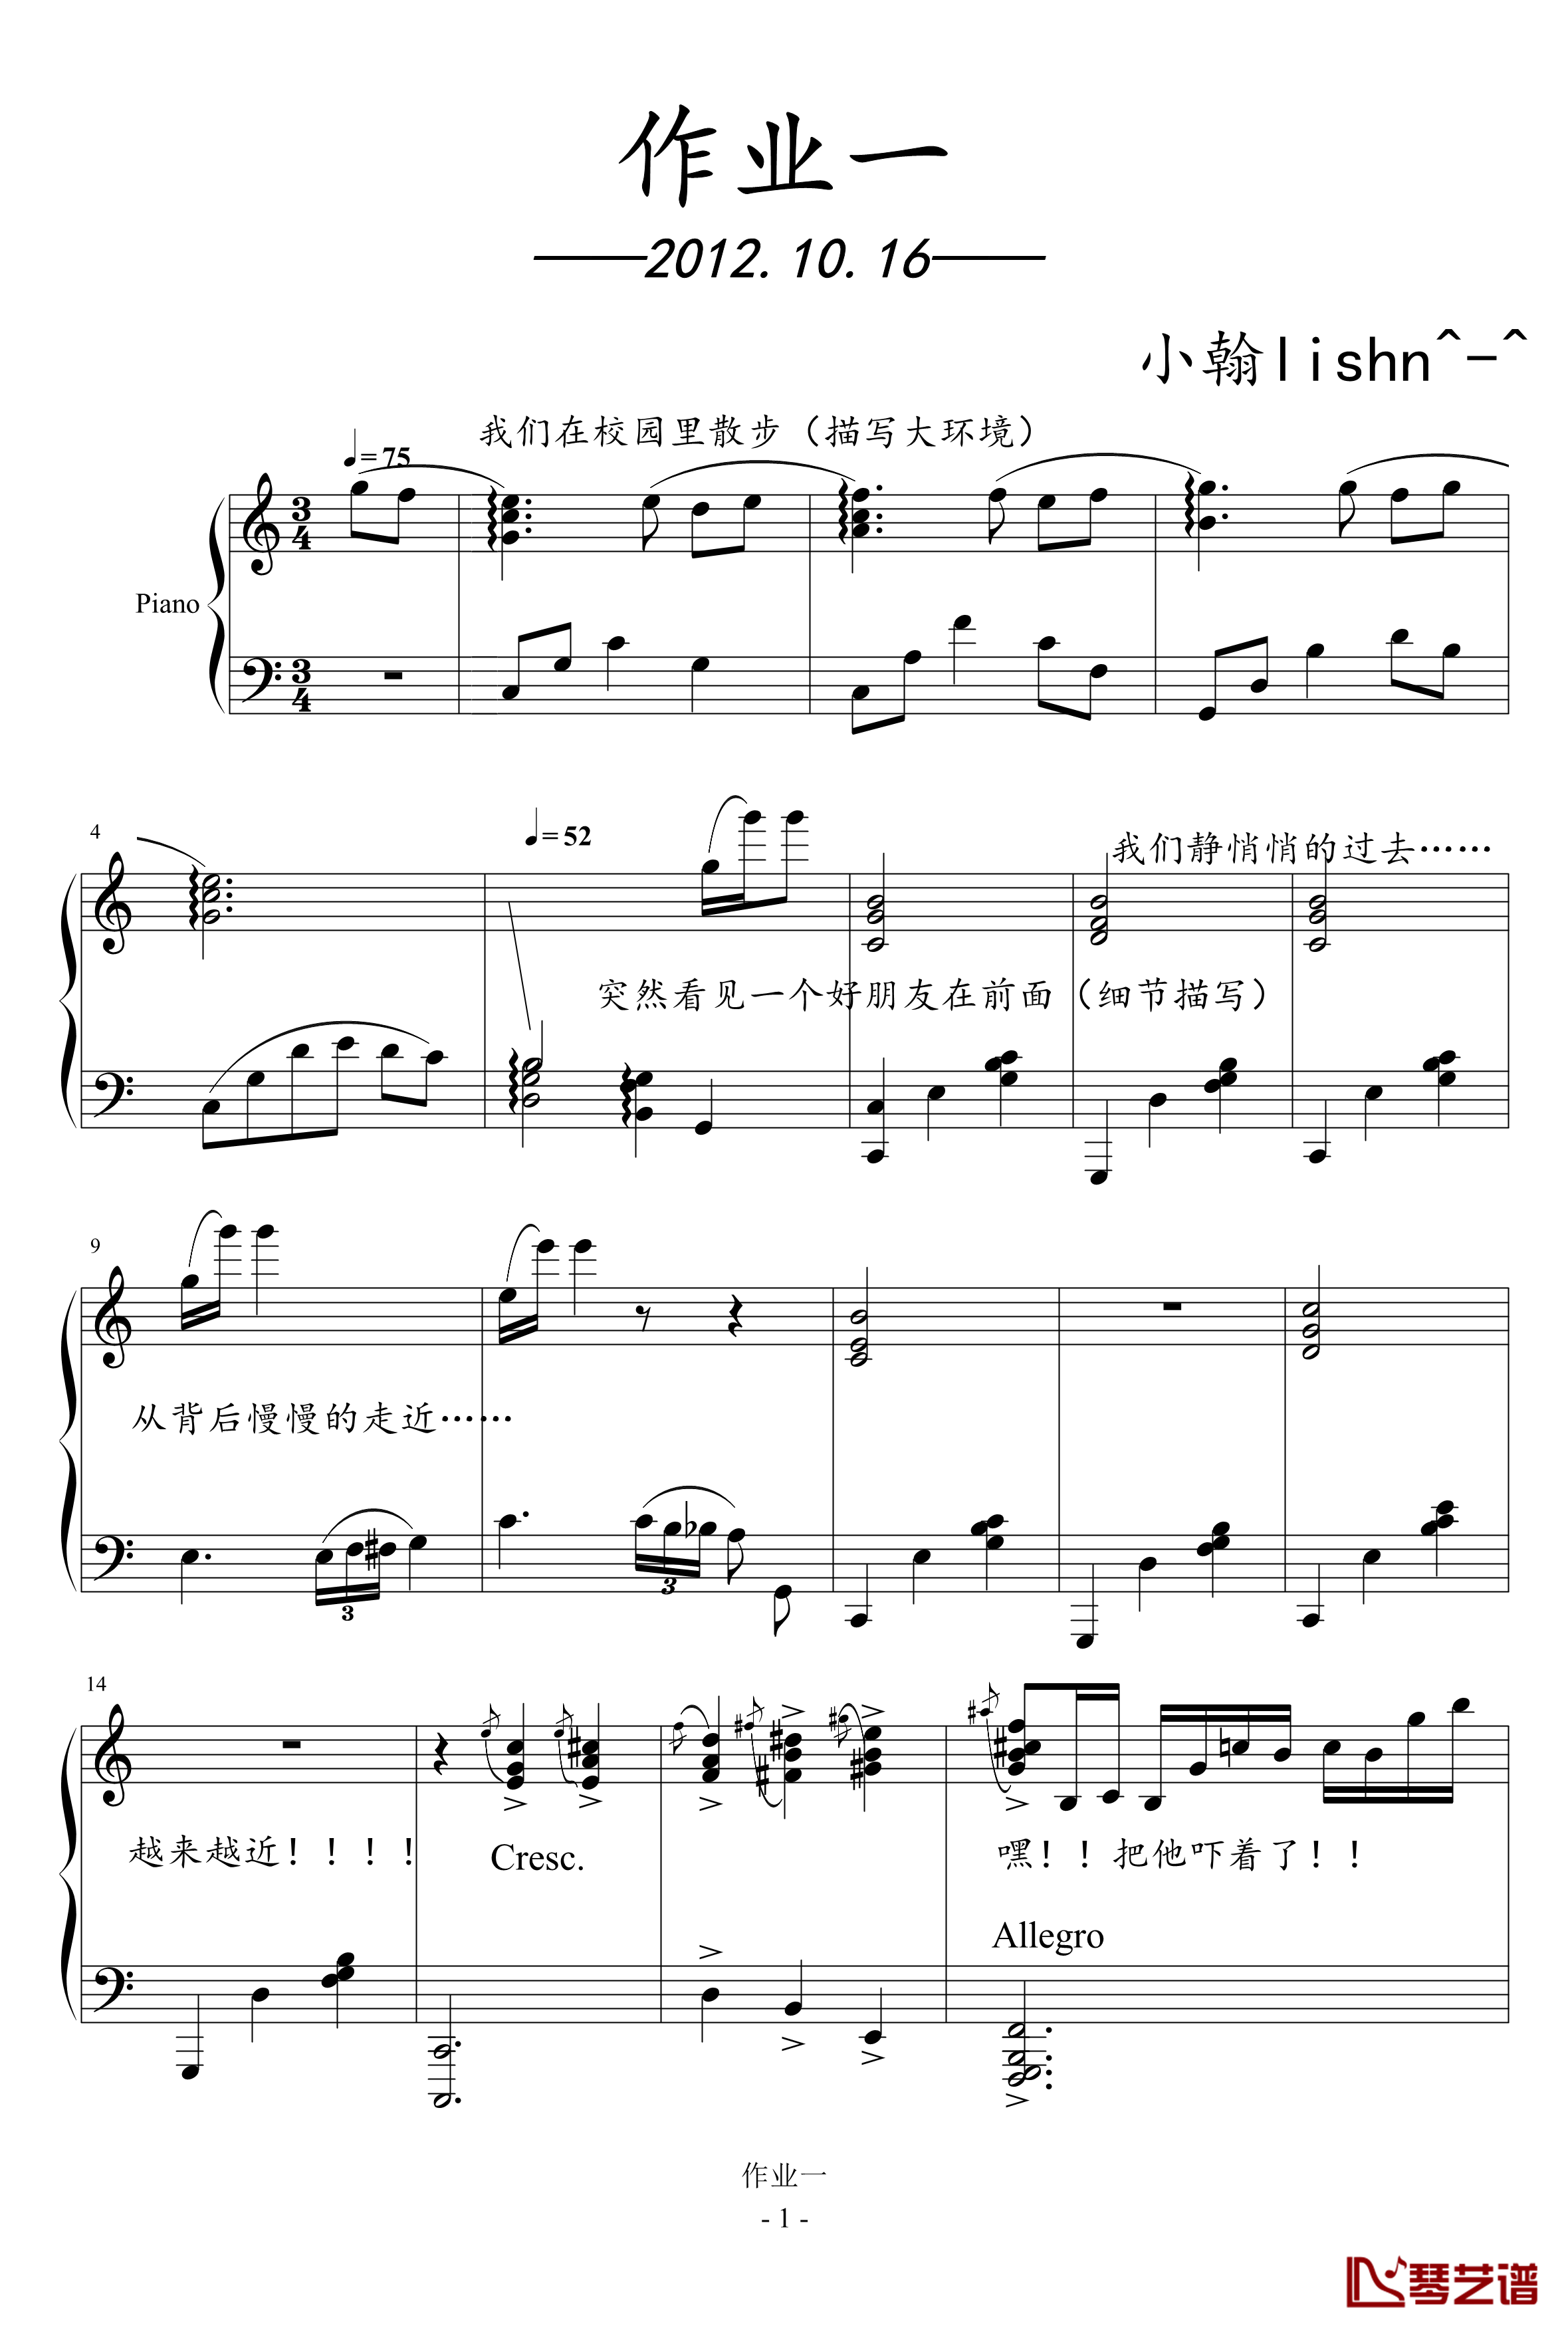 影视小品钢琴谱-作业一-绿诗翰1